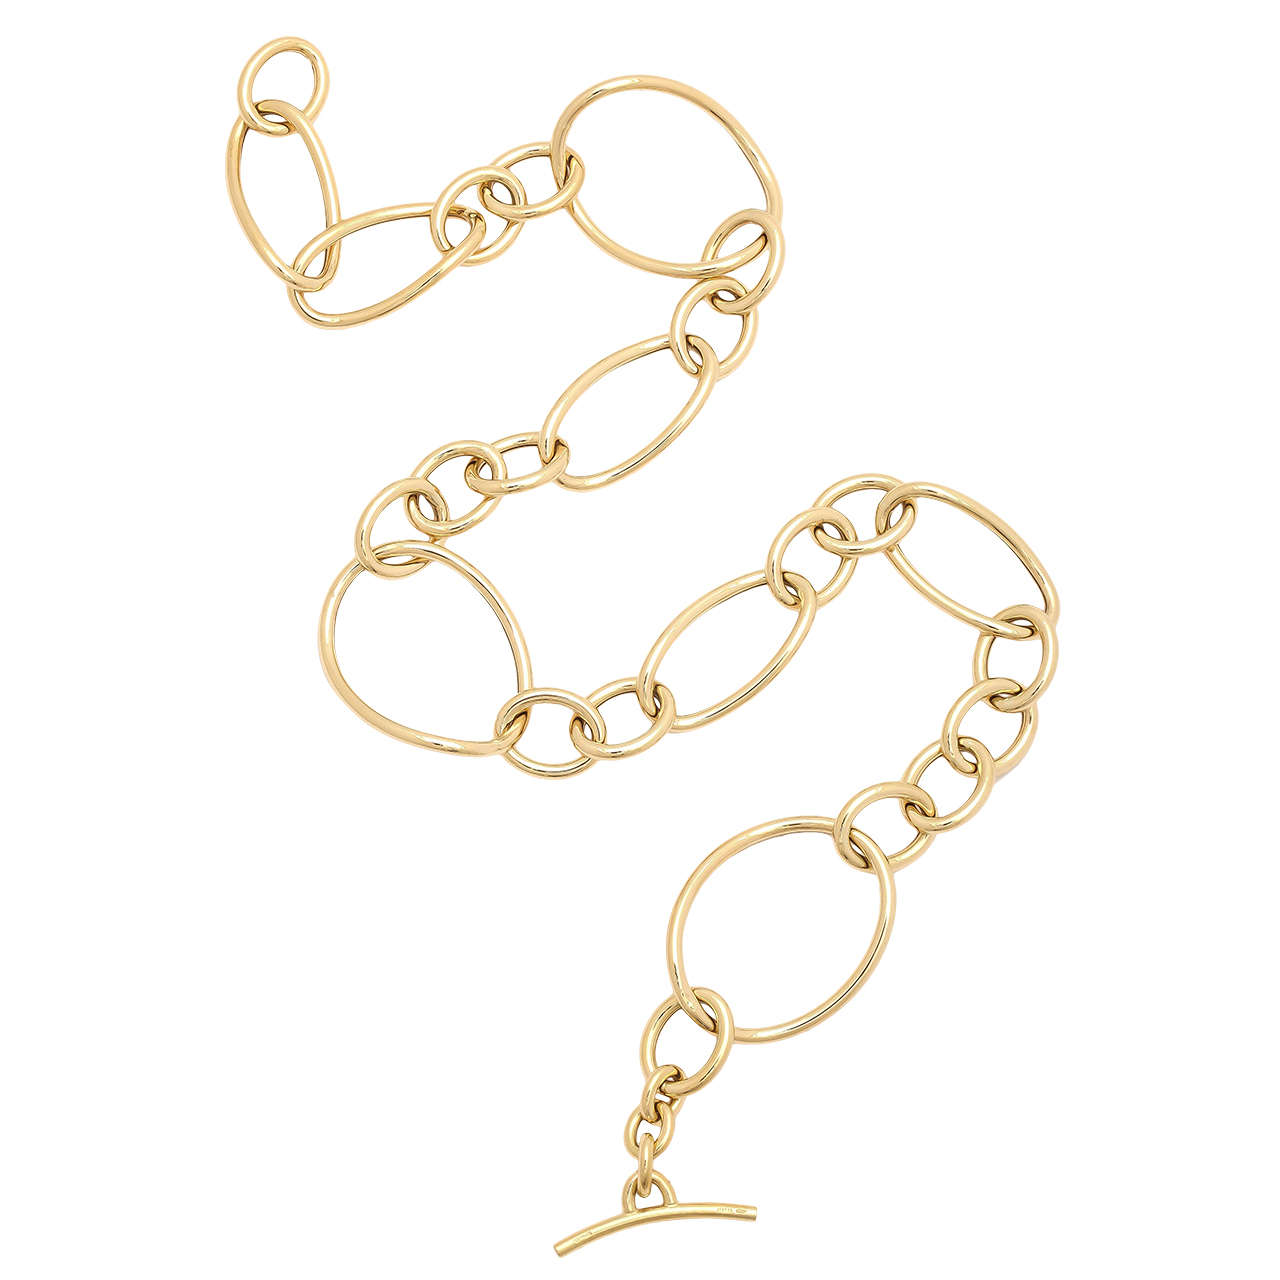 Faraone Mennella Gold Stella Necklaces For Sale